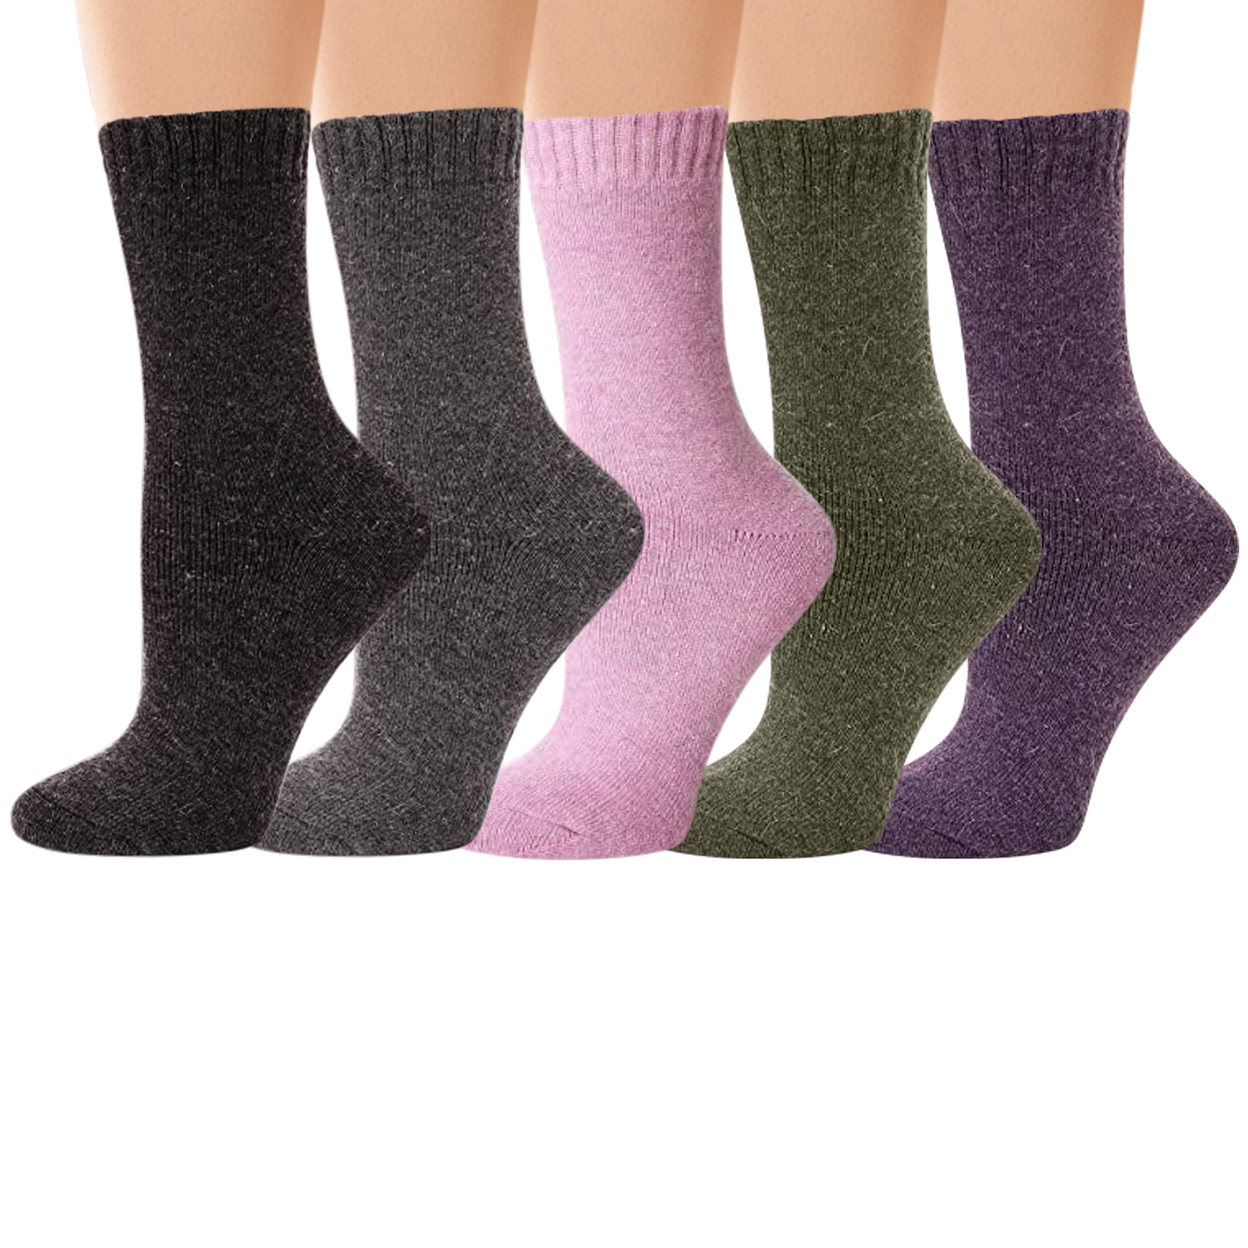 4-Pairs: Women's Warm Thick Merino Lamb Wool Winter Thermal Socks